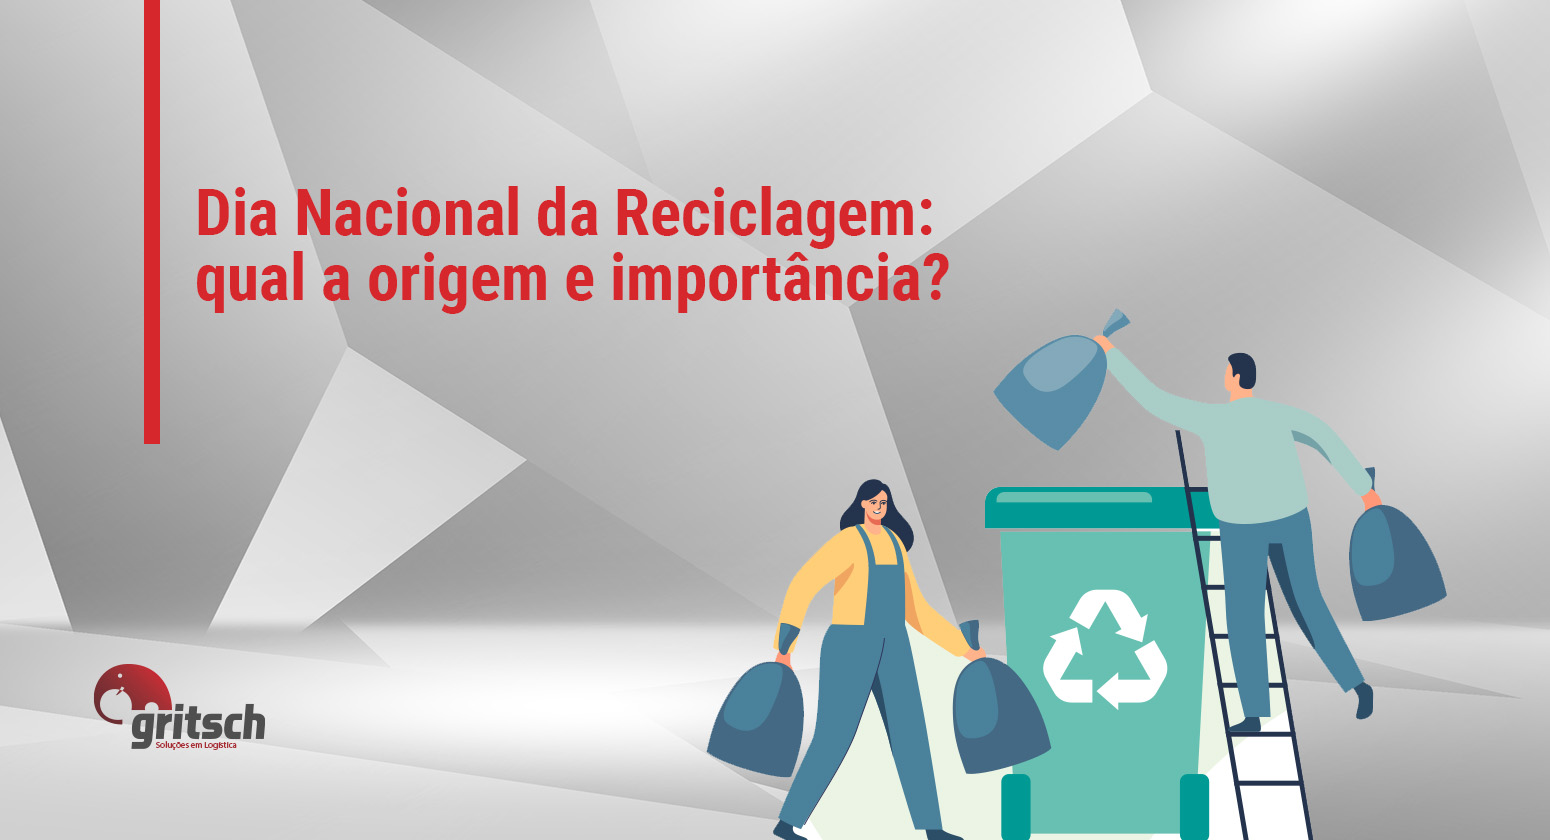 05 de junho é o Dia Nacional da Reciclagem